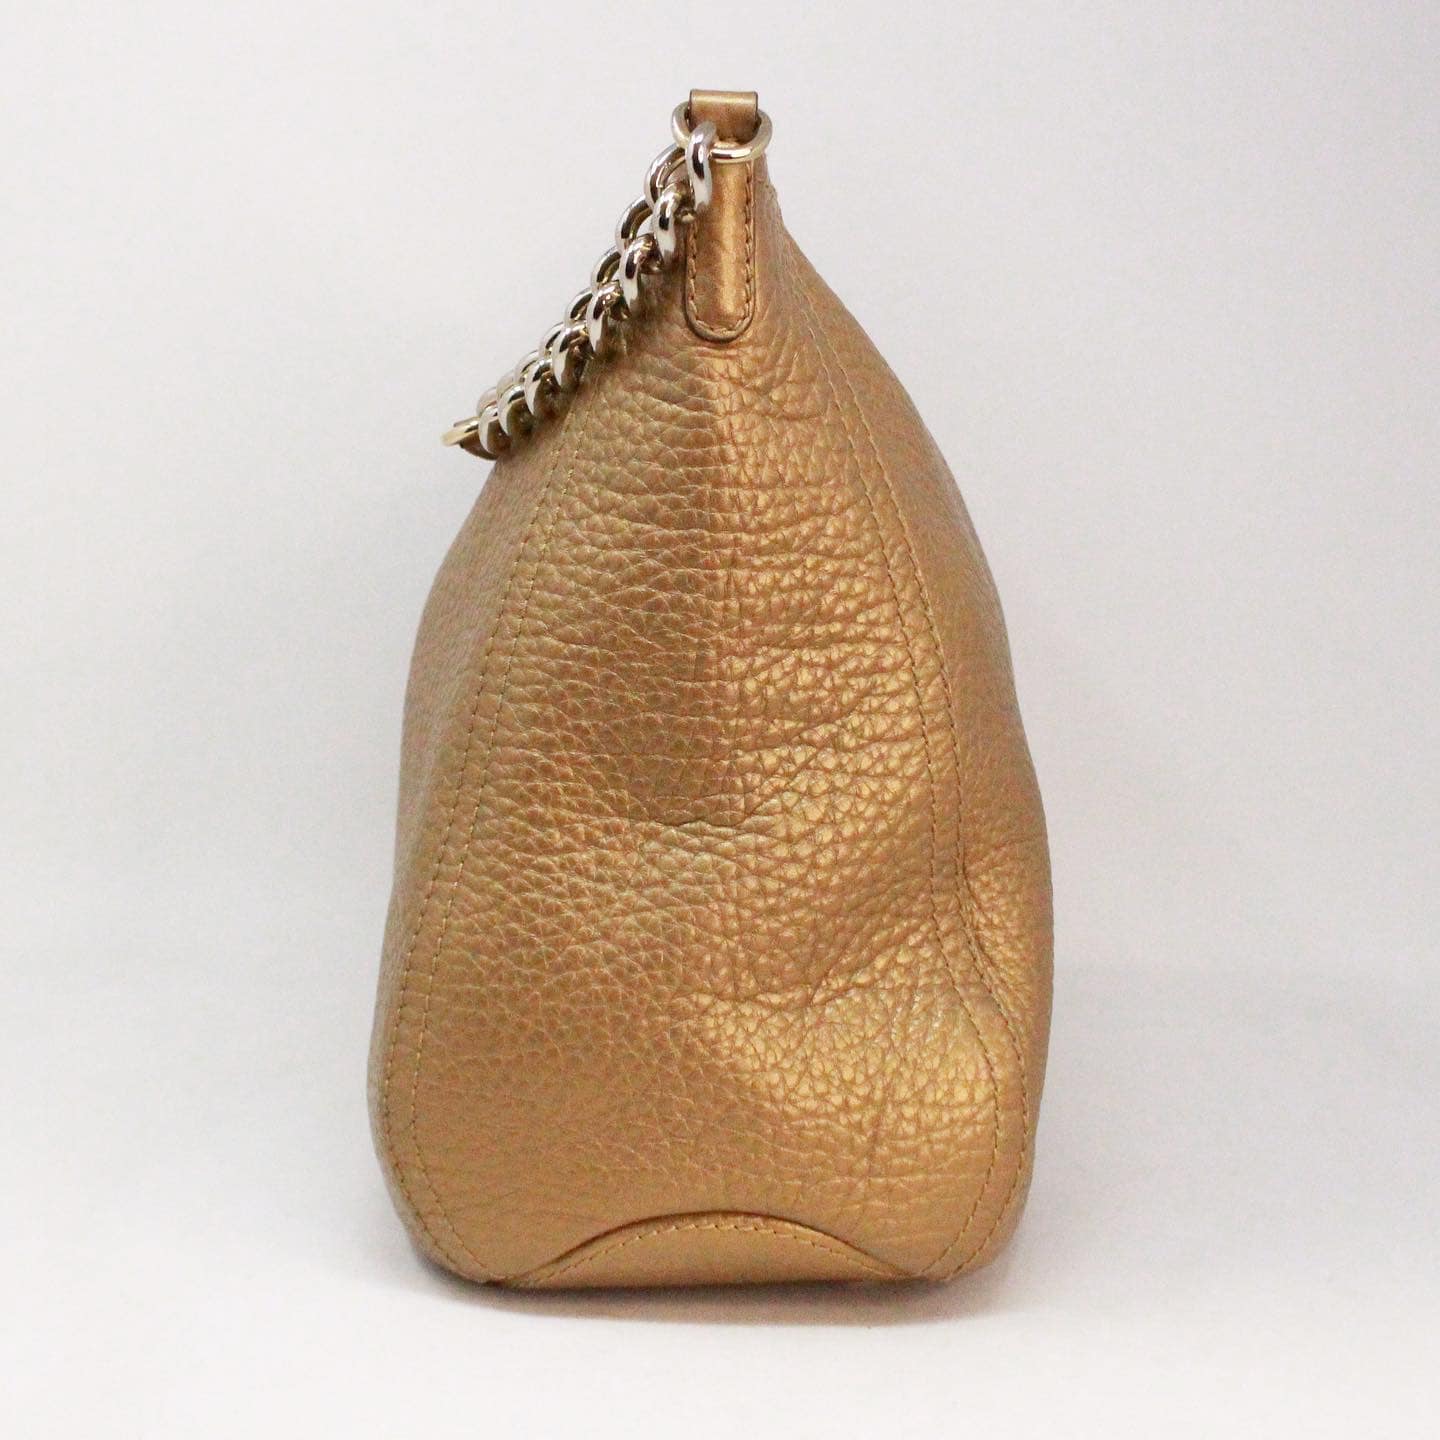 Pre-owned Carolina Herrera Leather Clutch Bag In Gold